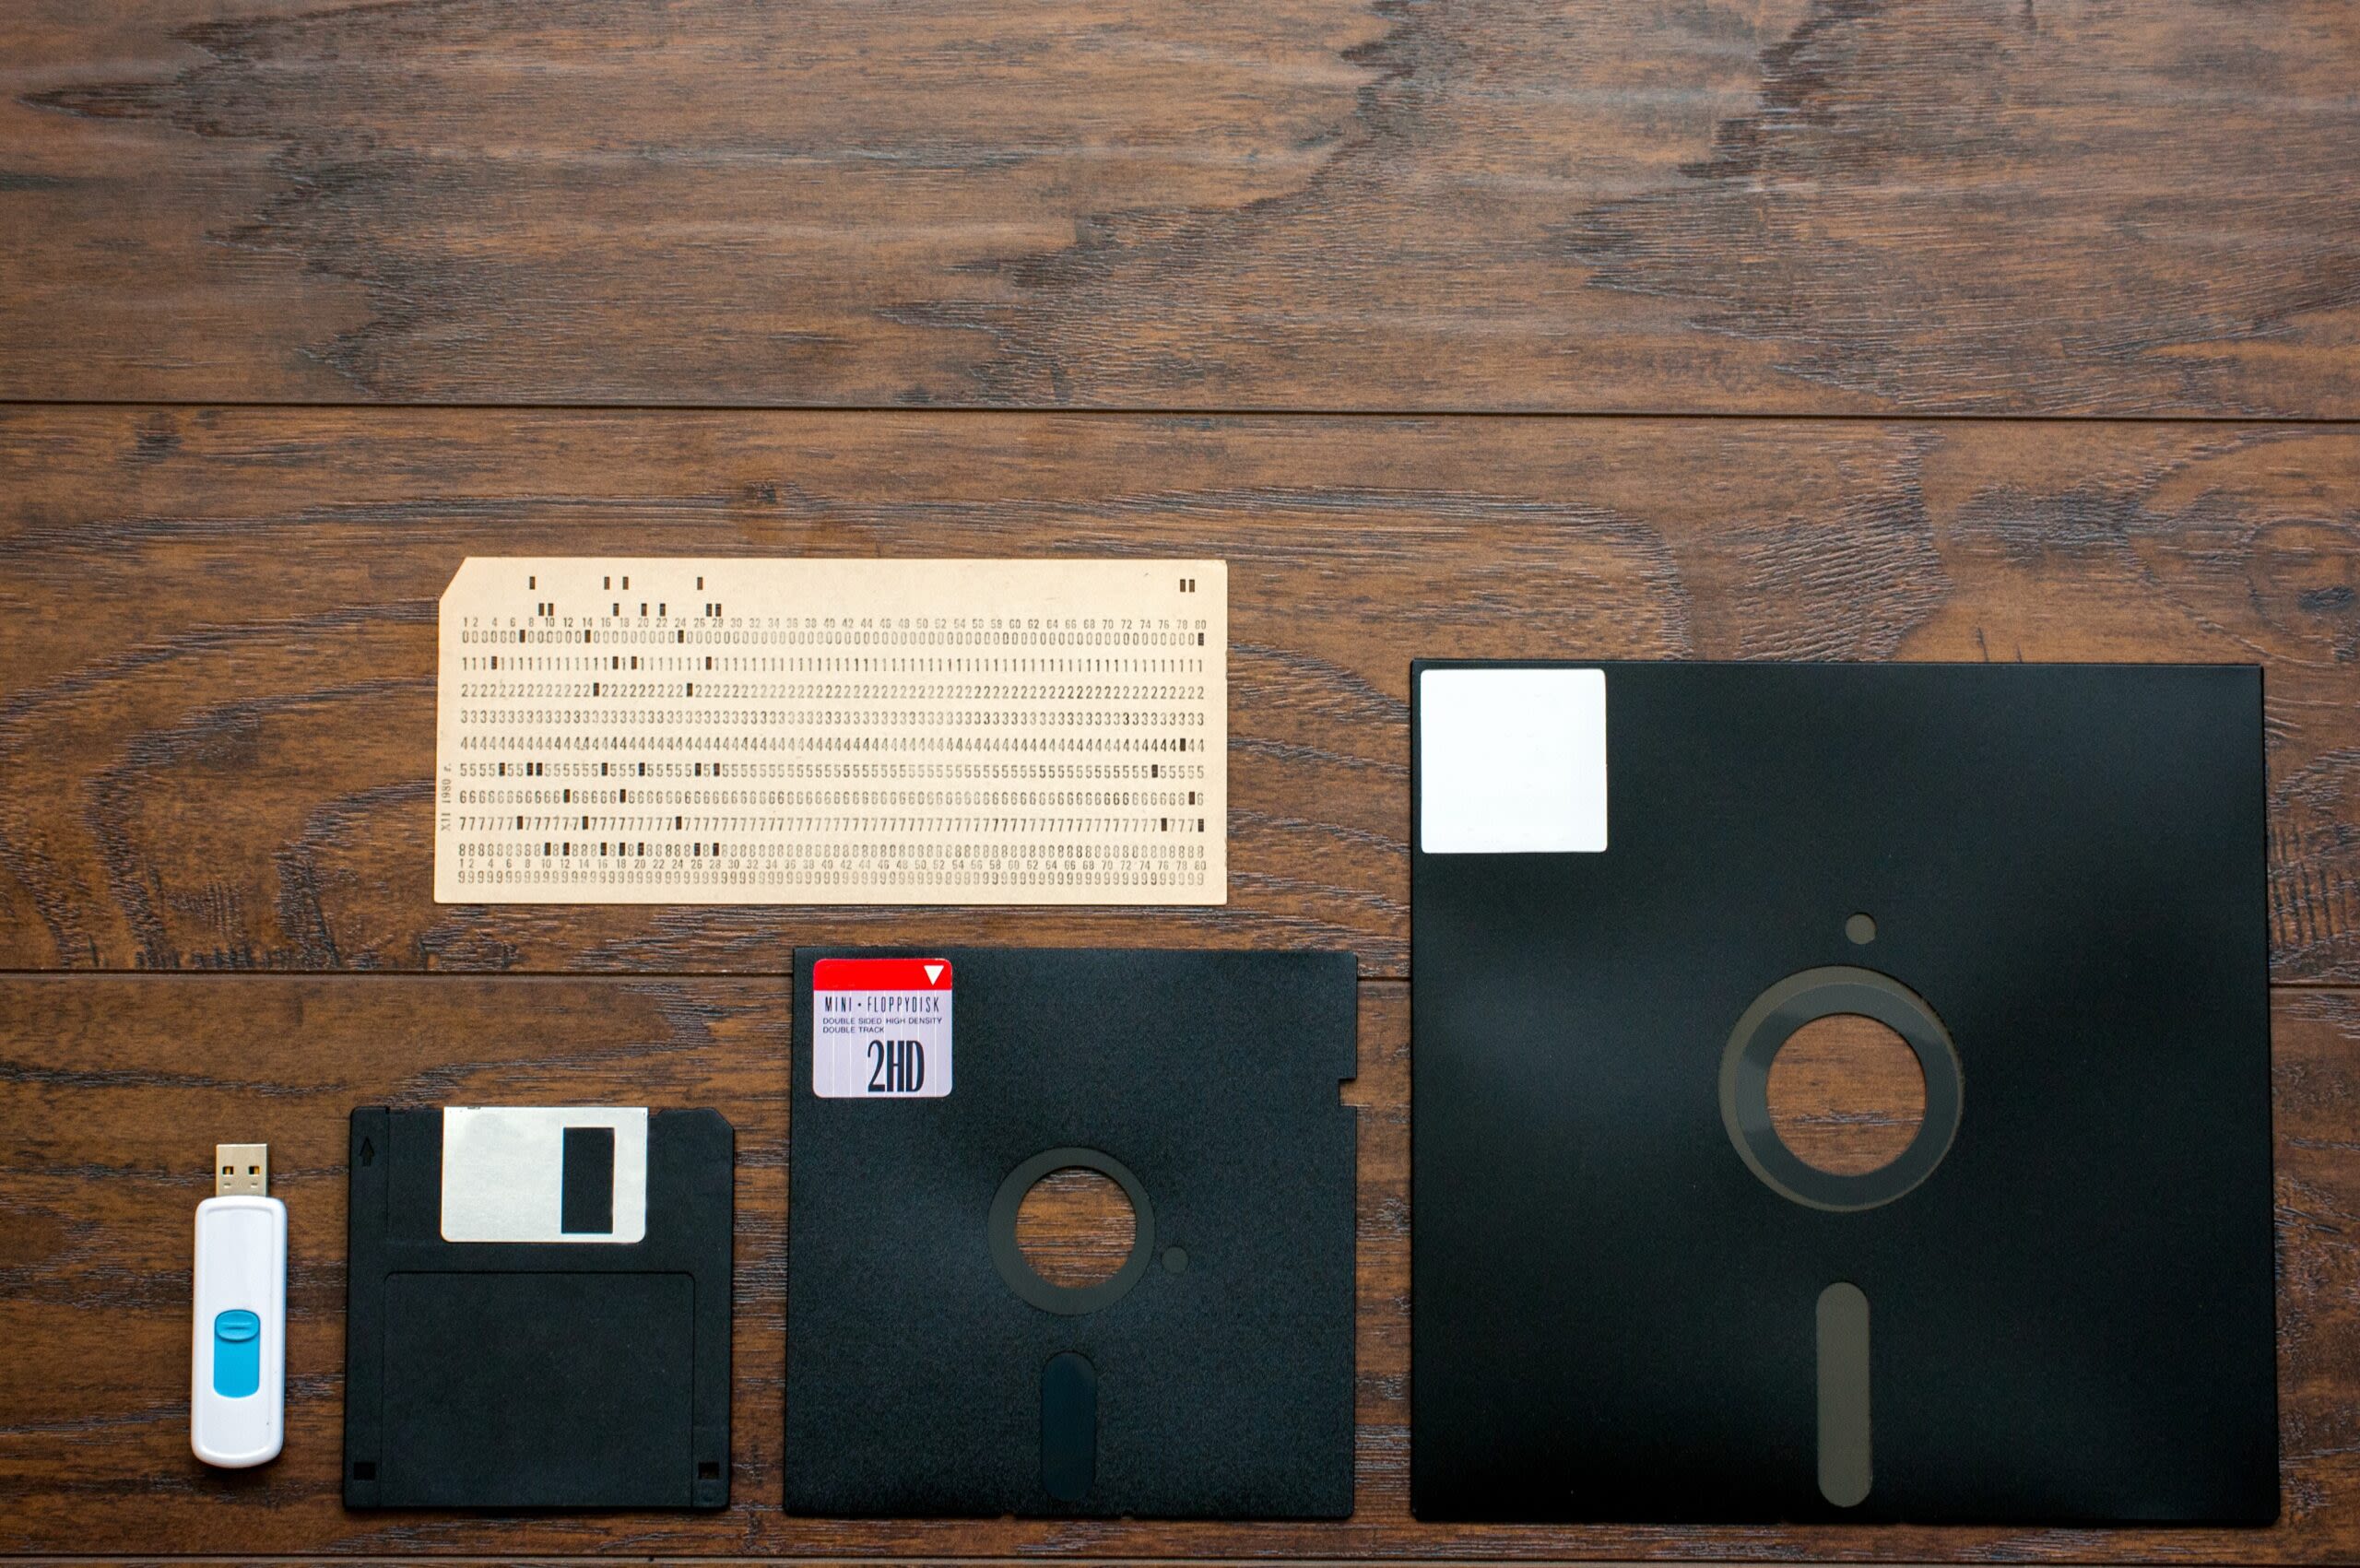 German navy still using 8-inch floppy disks